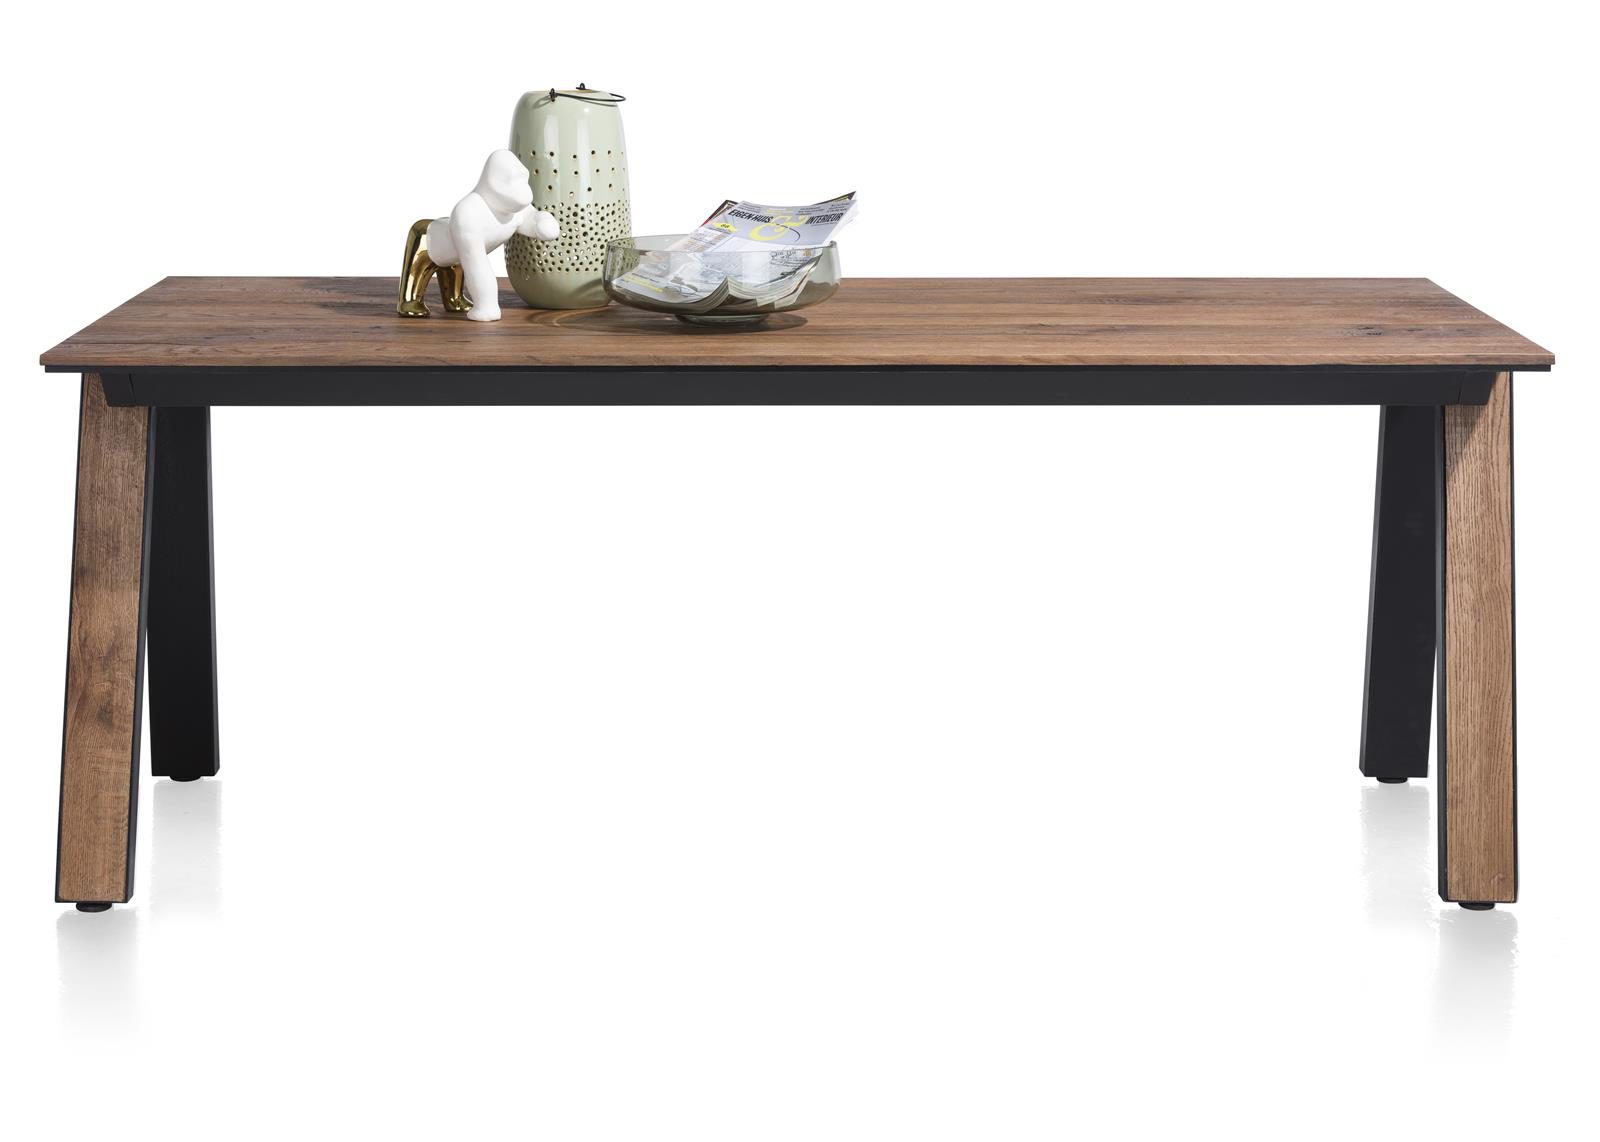 Tisch Henders & Hazel aus Furnier Metall in Braun Schwarz Tisch 200 x 100 cm bzw. Esszimmertisch Wildeichenfurnier Choco braun lackiert